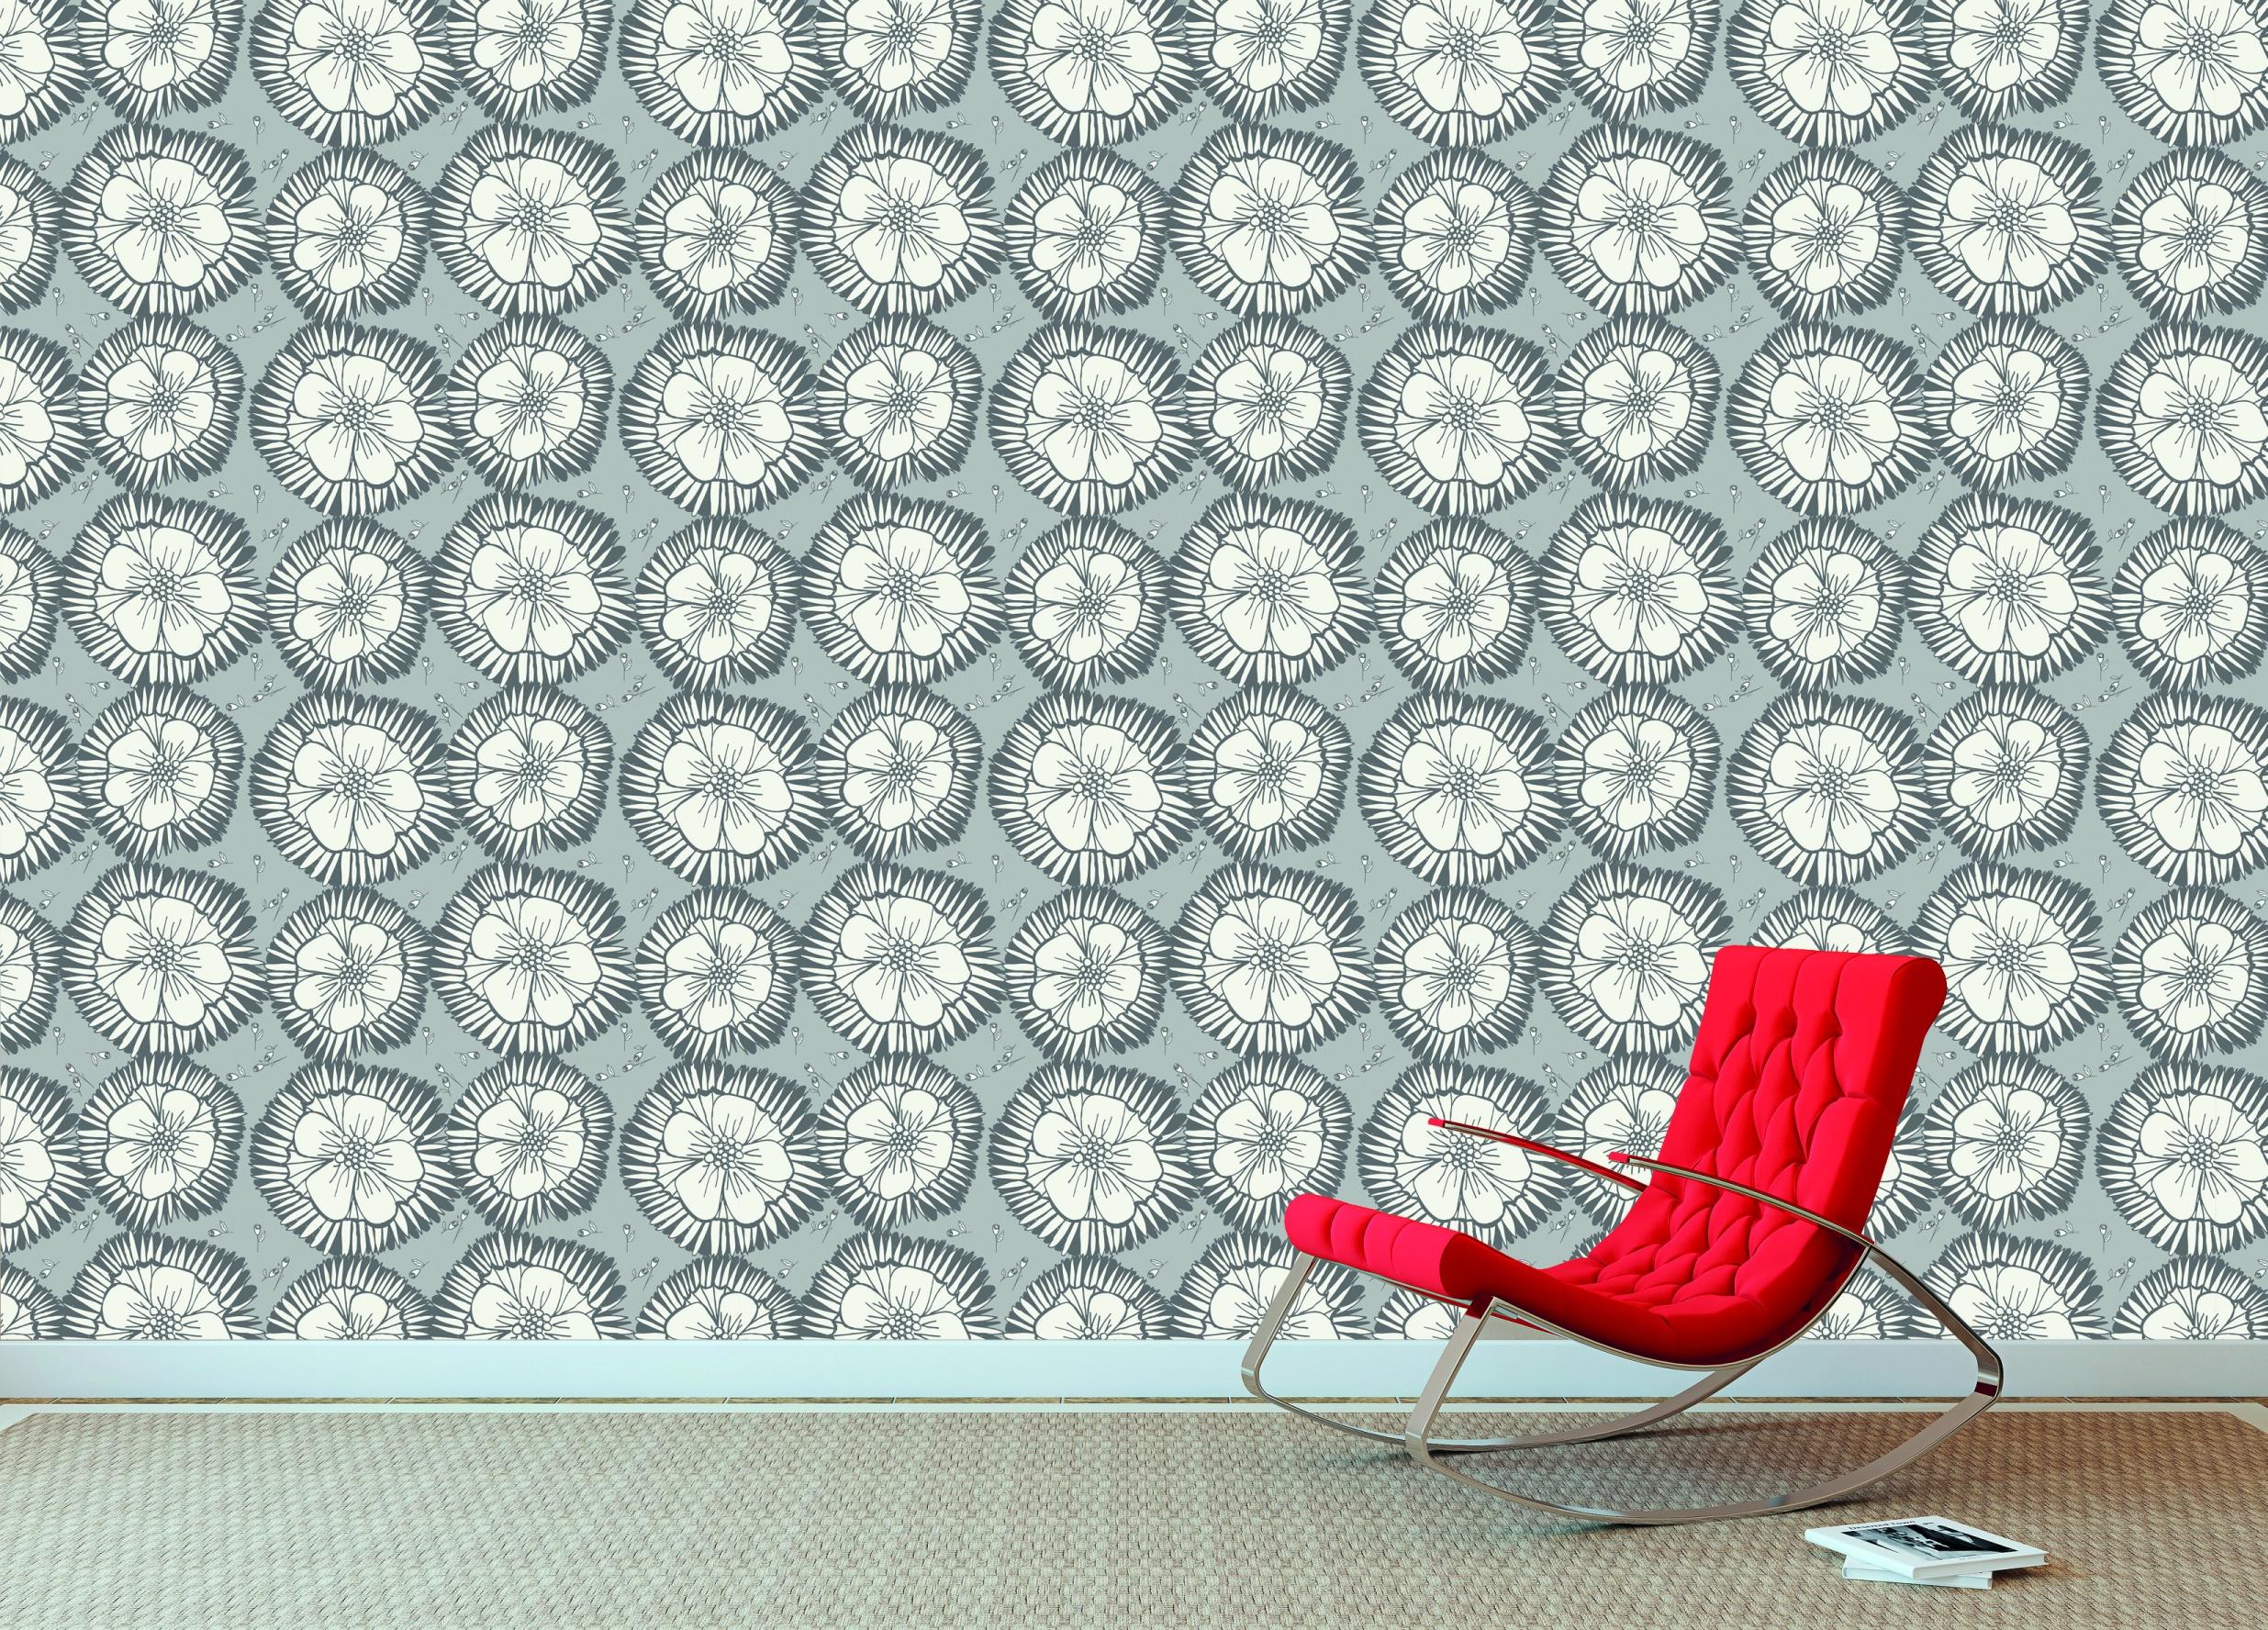 Design-Tapete Blossoms Grey #wohnzimmer #wandgestaltung #wall&deco #skandinavischesdesign #designwand #grauweißewandgestaltung ©Studio Kelkka